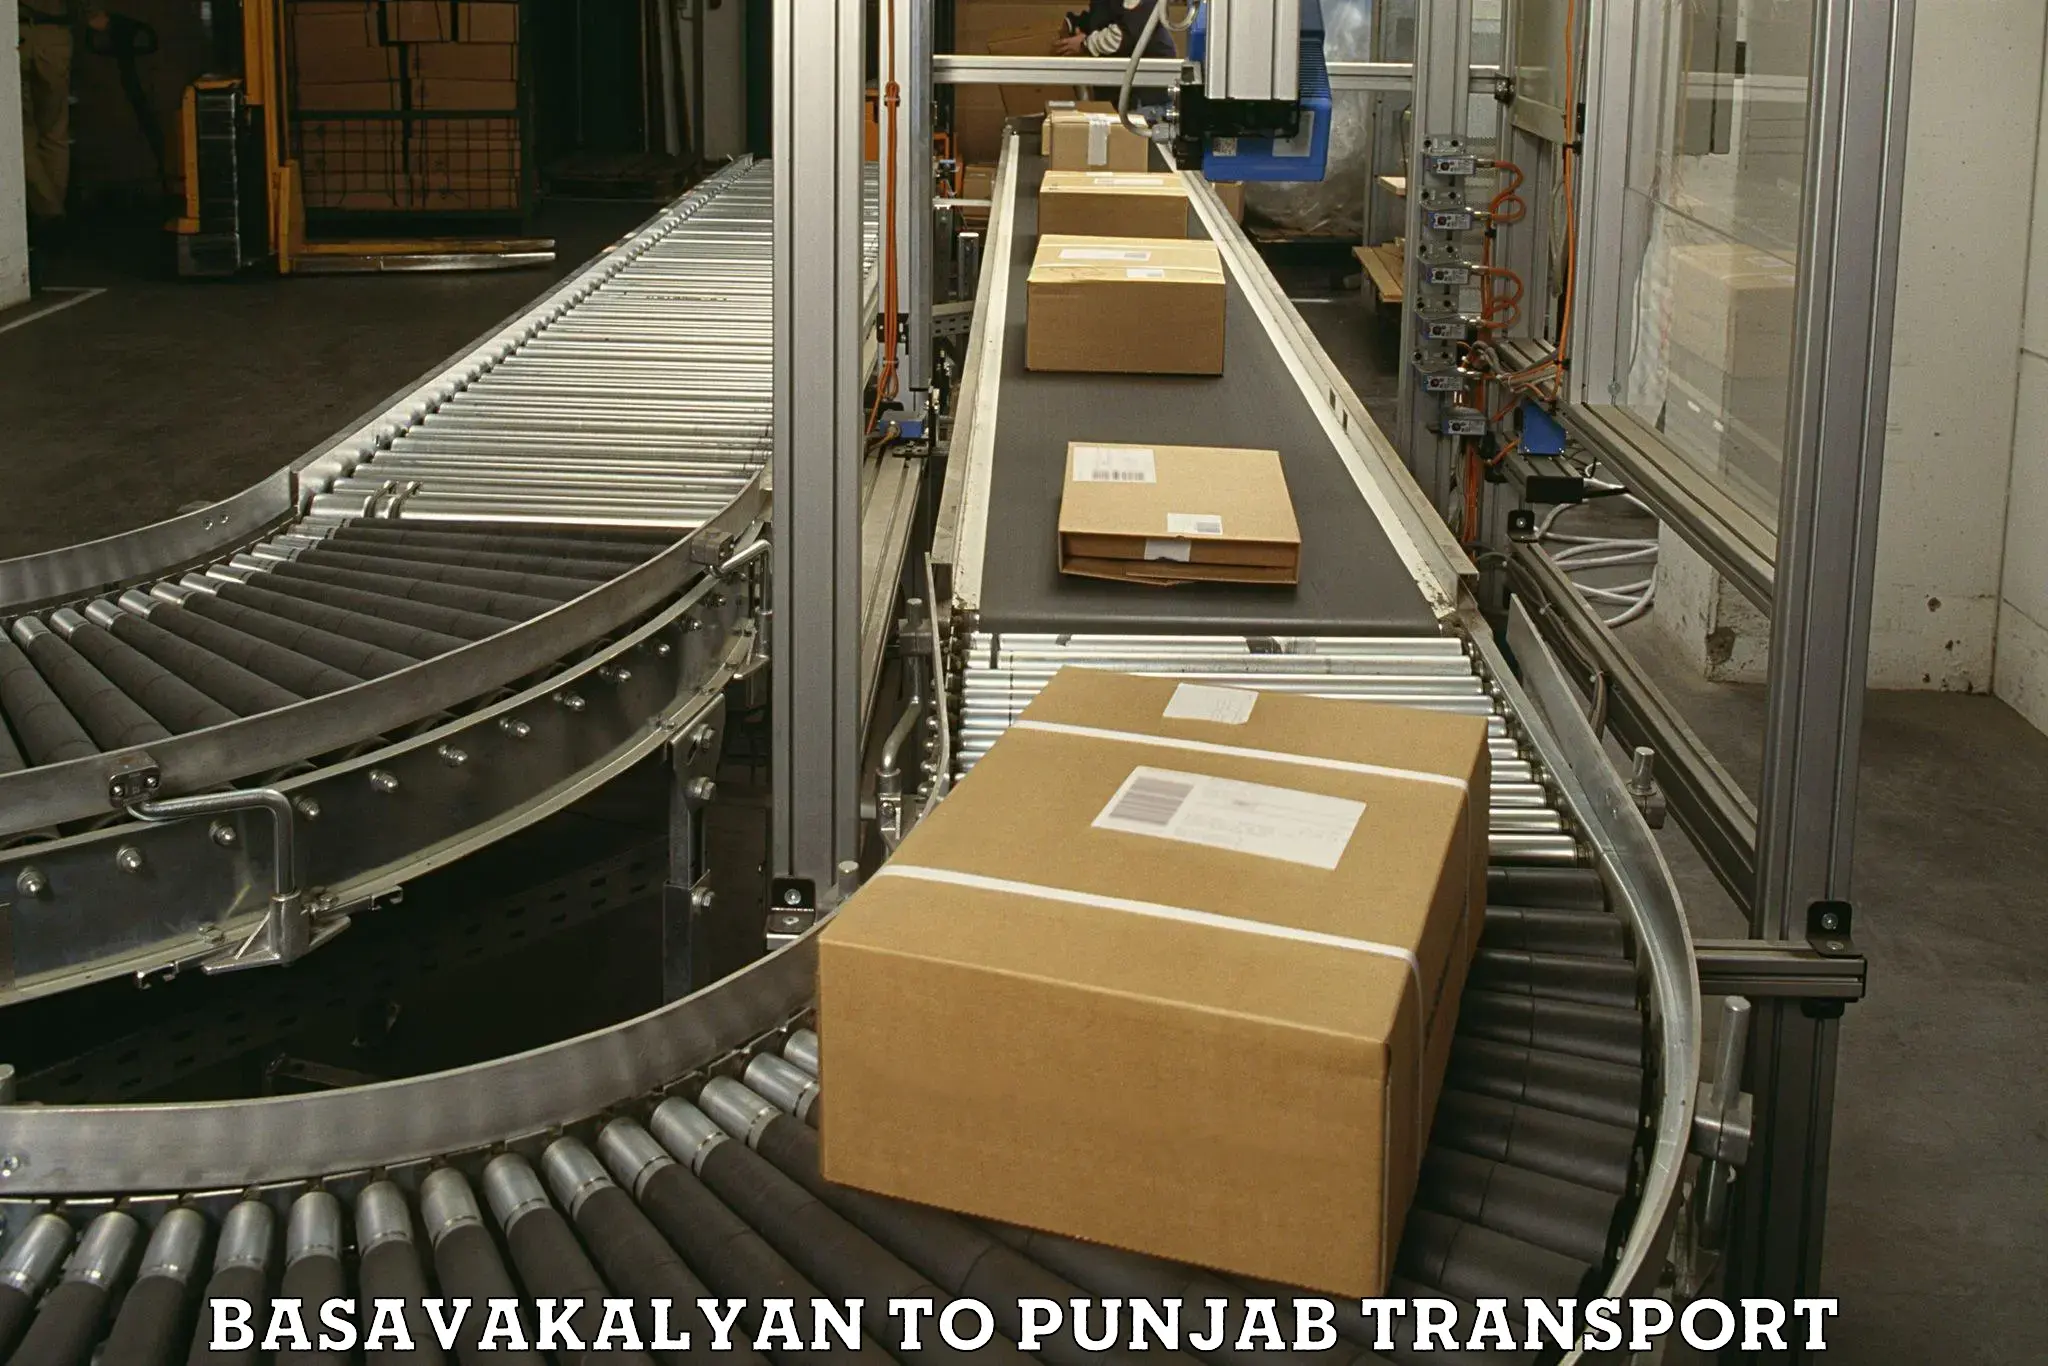 Daily transport service Basavakalyan to Patiala